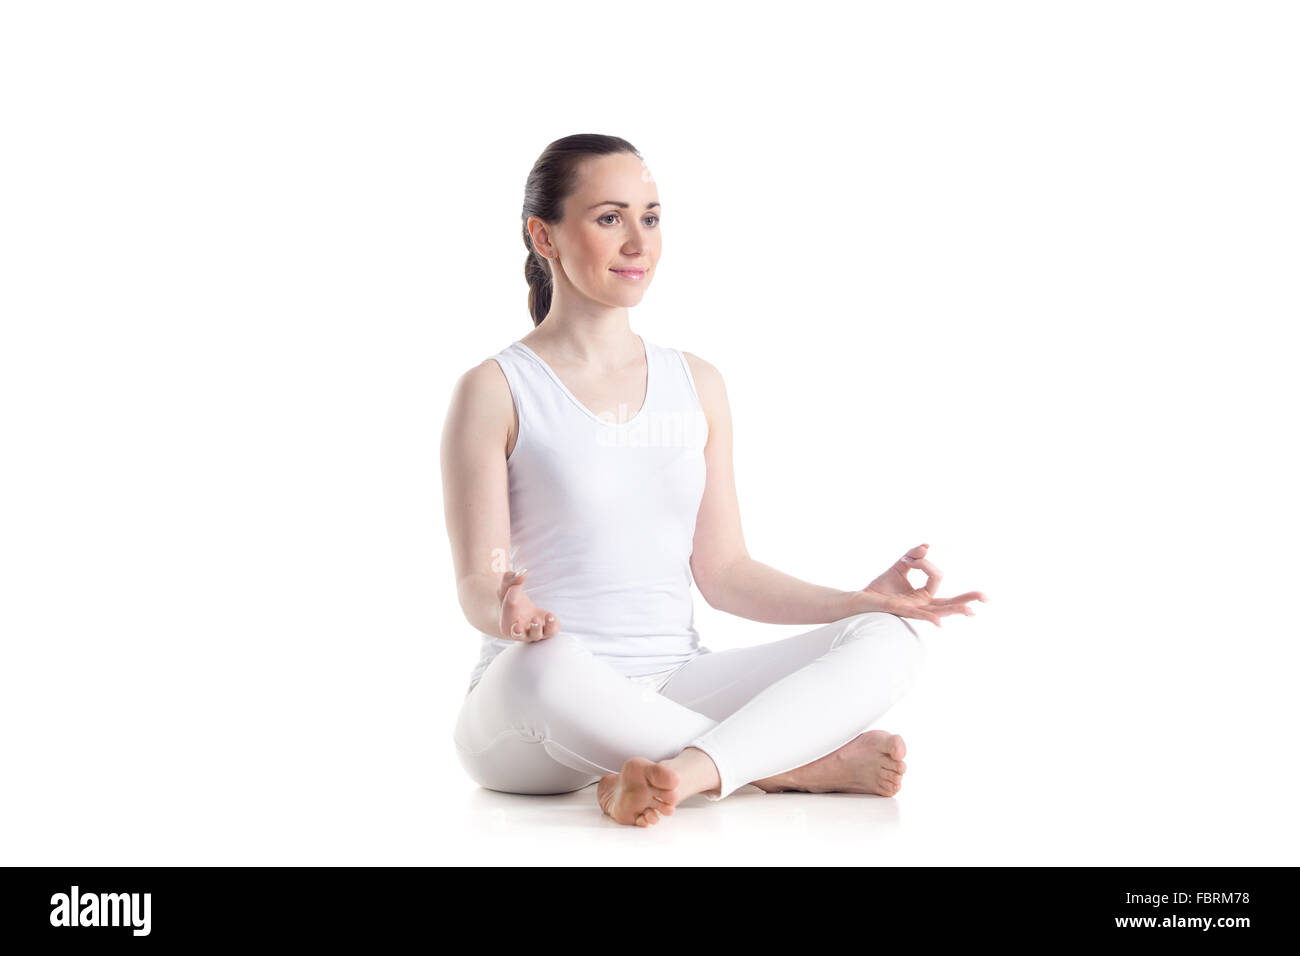 Belle jeune femme sportive pratiquant le yoga, assis dans (facile, agréable décent posent), Sukhasana, asana pour la méditation Banque D'Images